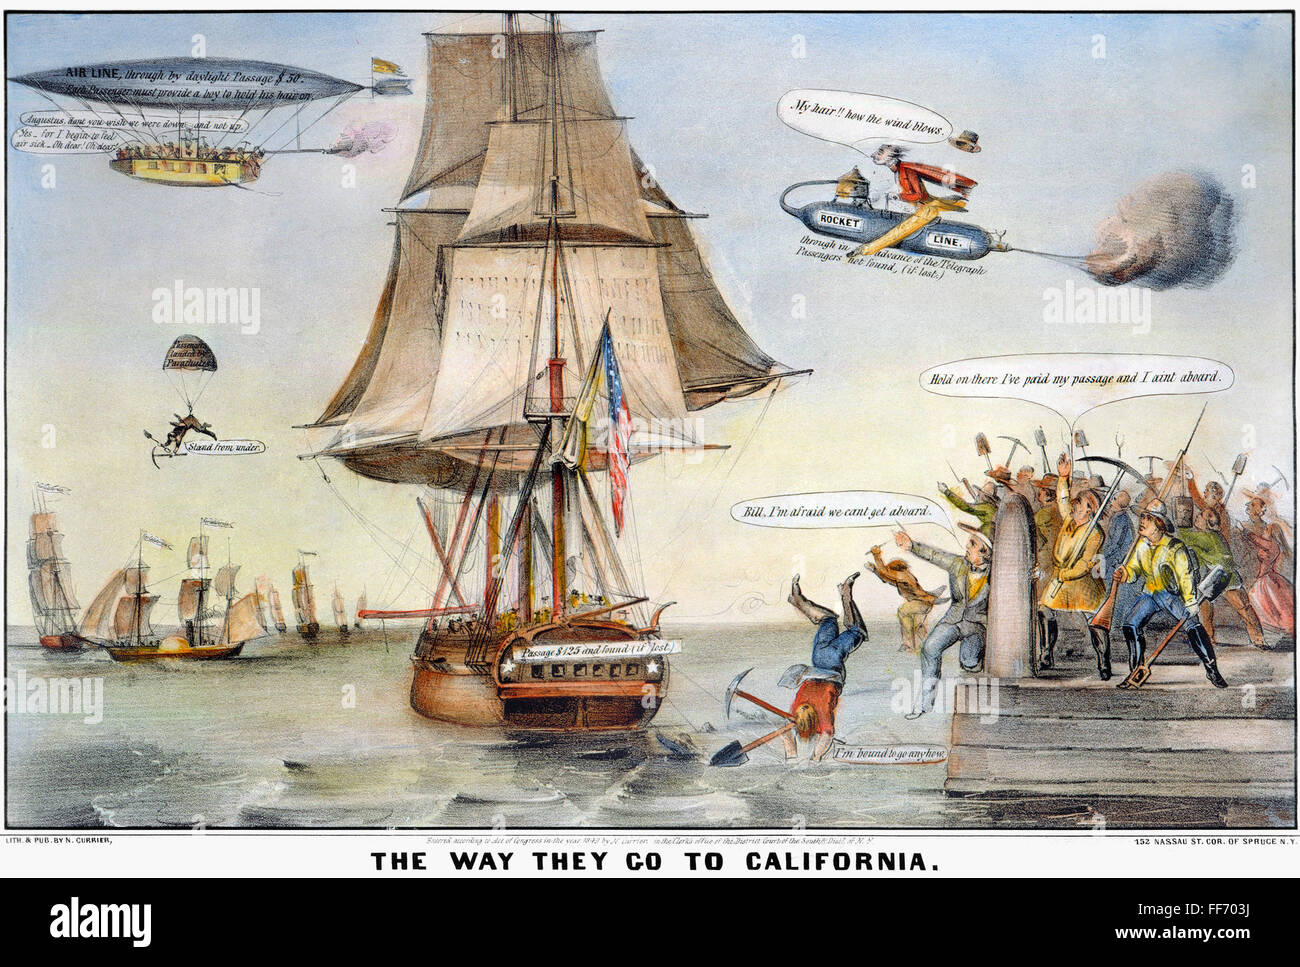 Ruée vers l'or, dessin animé, 1849. /N'Til façon dont ils aller en Californie." Caricature de l'empressement des gens de l'est pour atteindre les champs aurifères en Californie. Lithographie par Nathaniel Currier, 1849. Banque D'Images